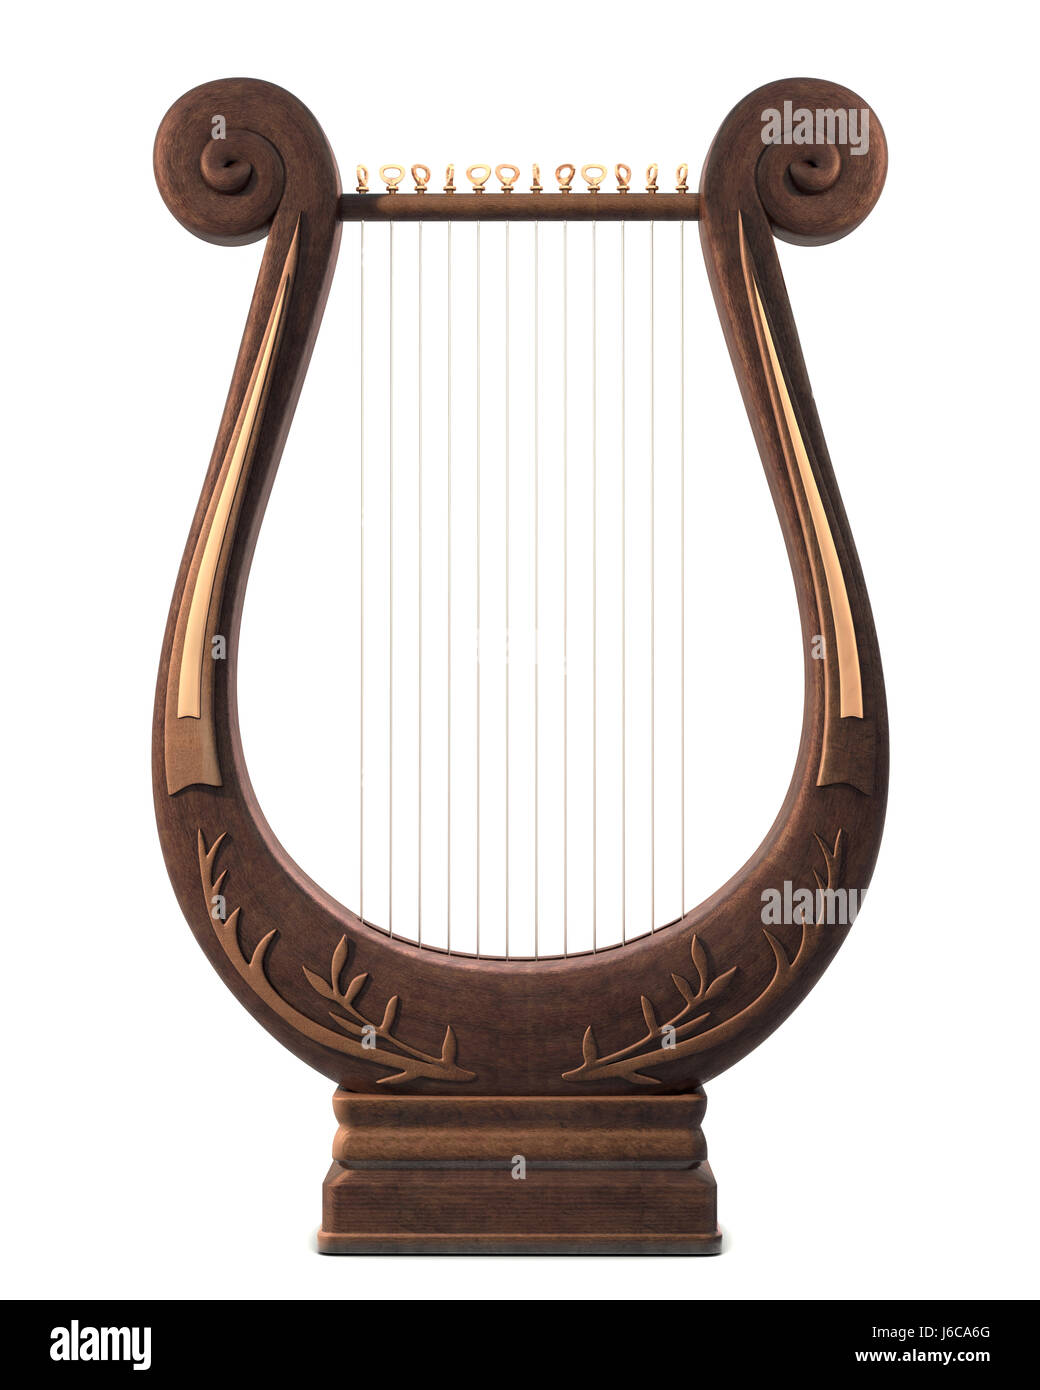 Música antigua música retro ornamentado lira instrumento musical musical  aislada simetría Fotografía de stock - Alamy